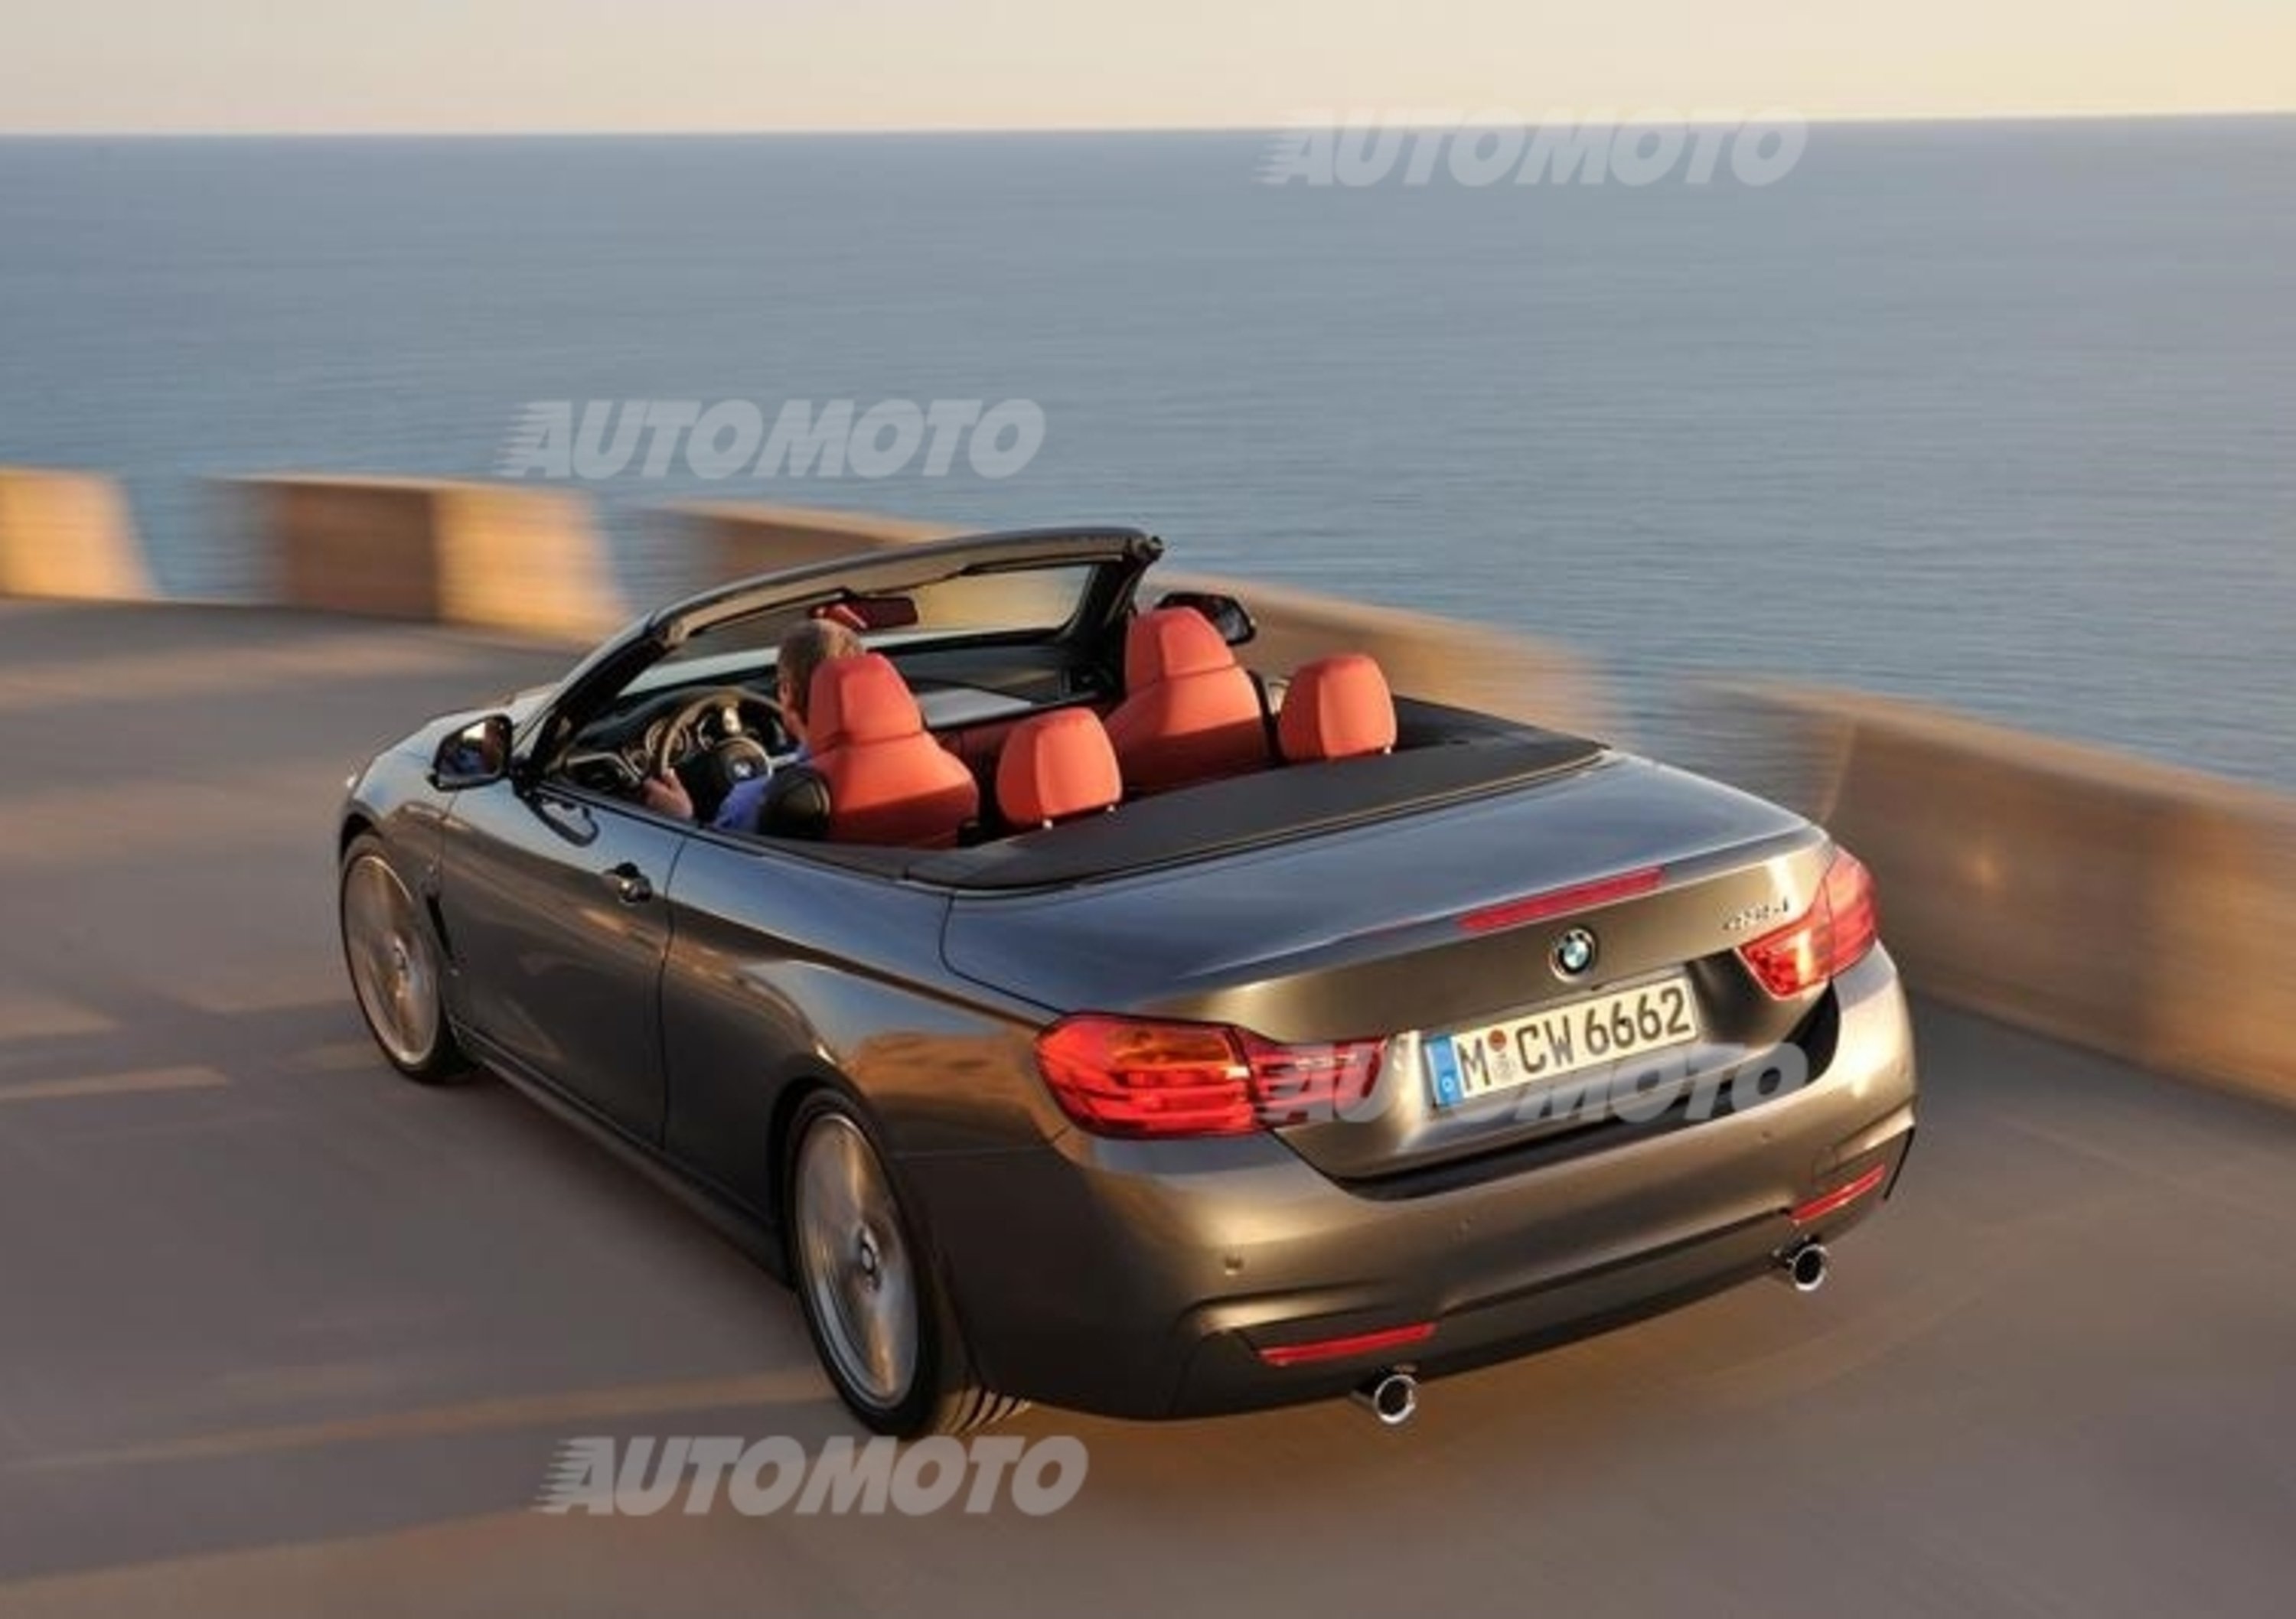 Nuova BMW Serie 4 Cabrio: tutti i dati ufficiali